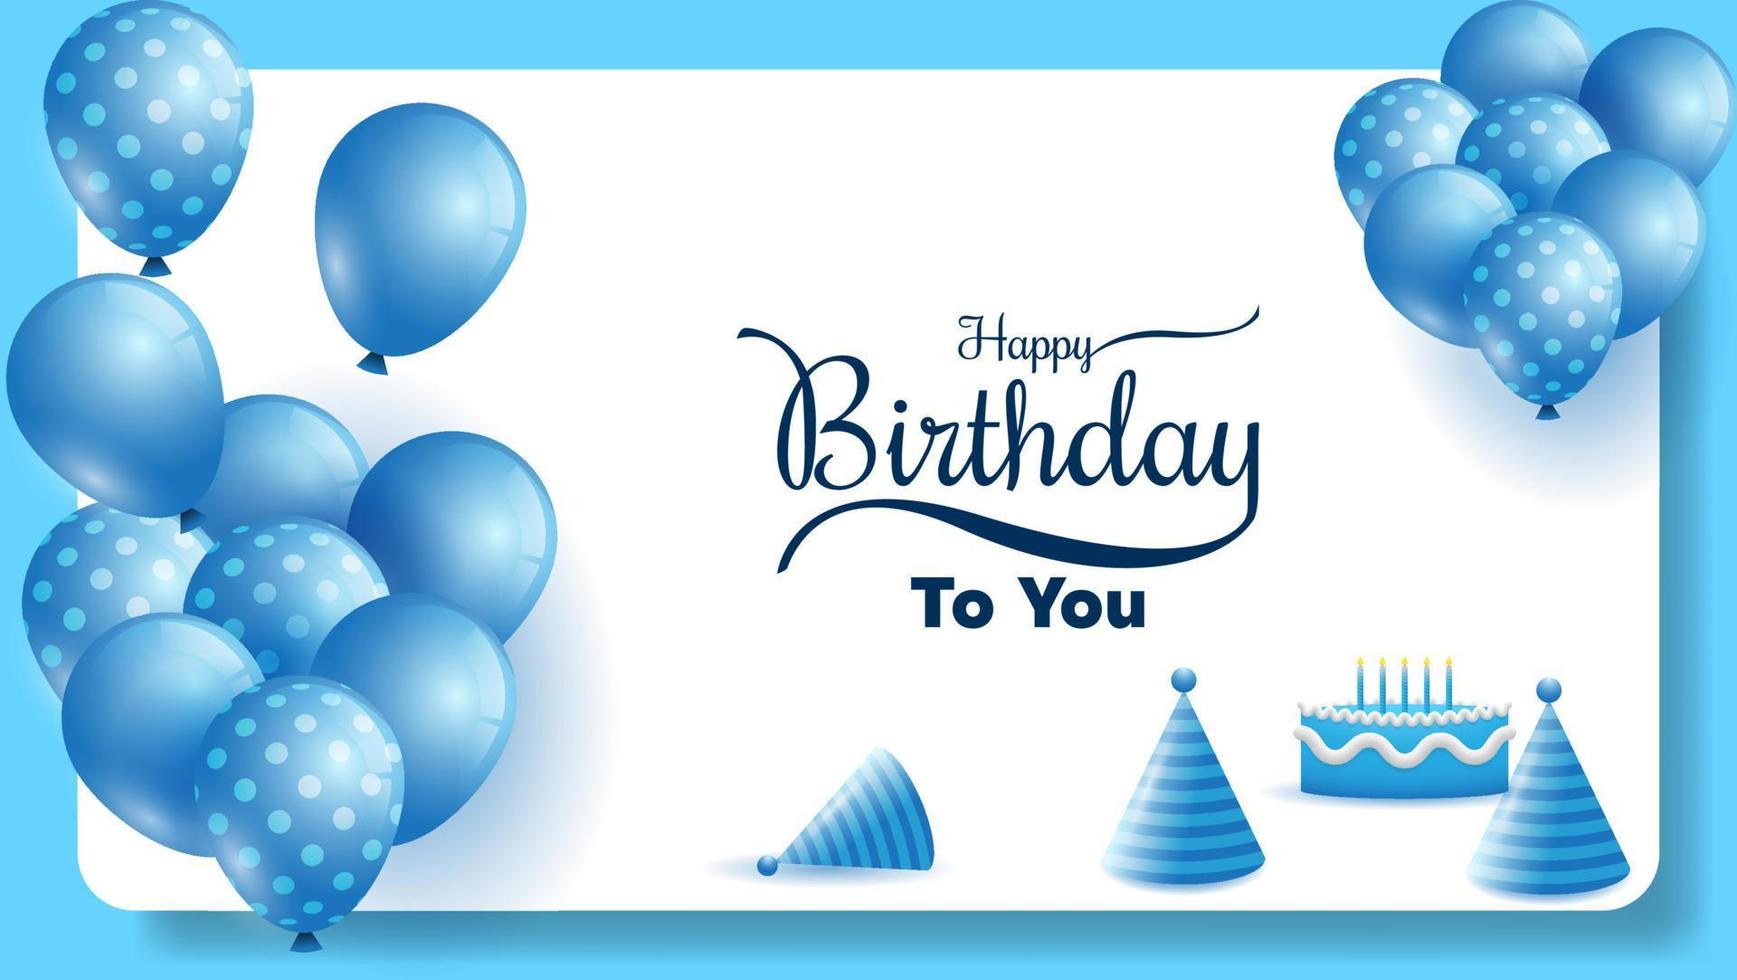 feliz aniversário para você fundo com balões, confetes, chapéu de aniversário e bolo de aniversário em azul e branco. adequado para cartão de felicitações, banner, post de mídia social, cartaz, etc. ilustração vetorial vetor